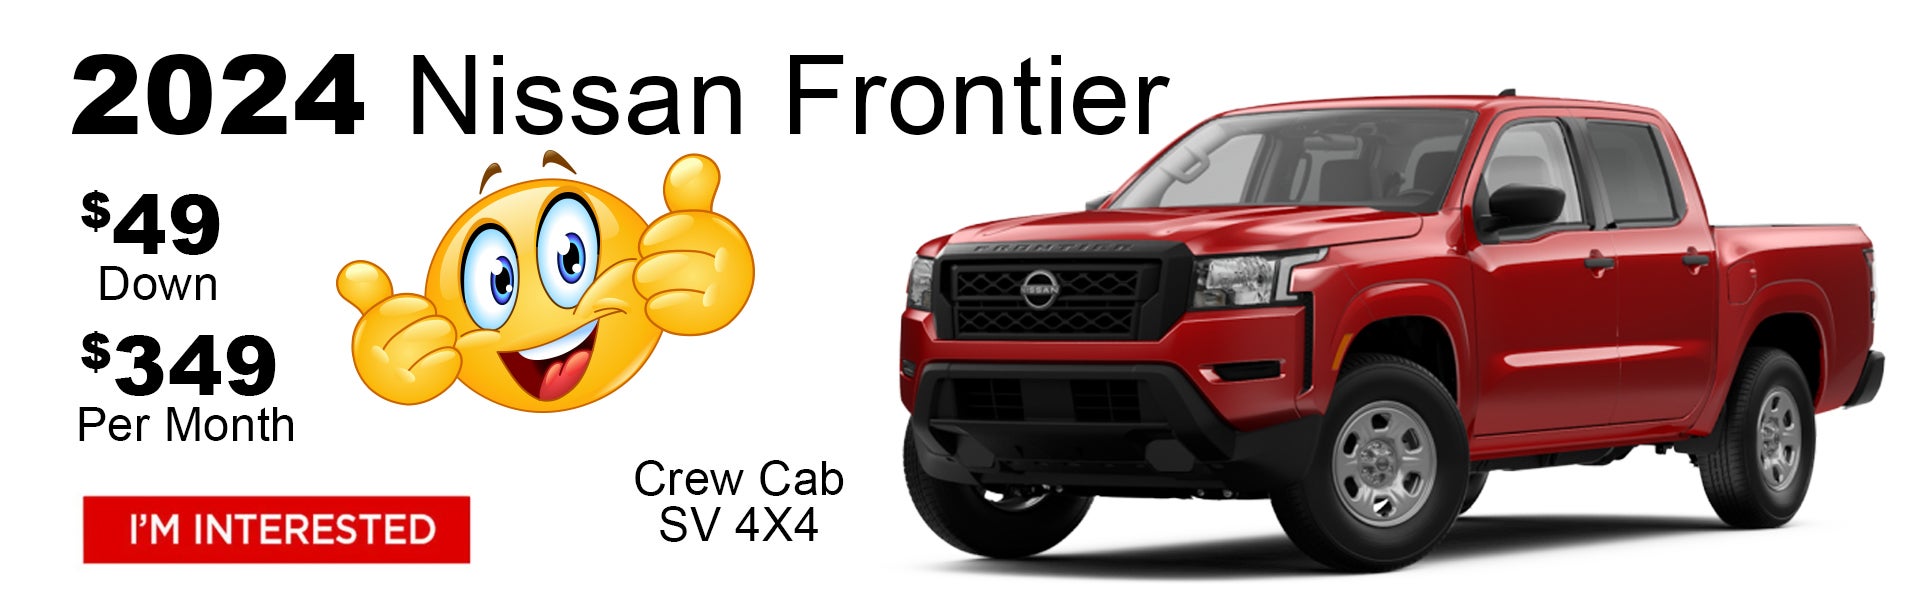 New Nissan Frontier $49 Dealer Special